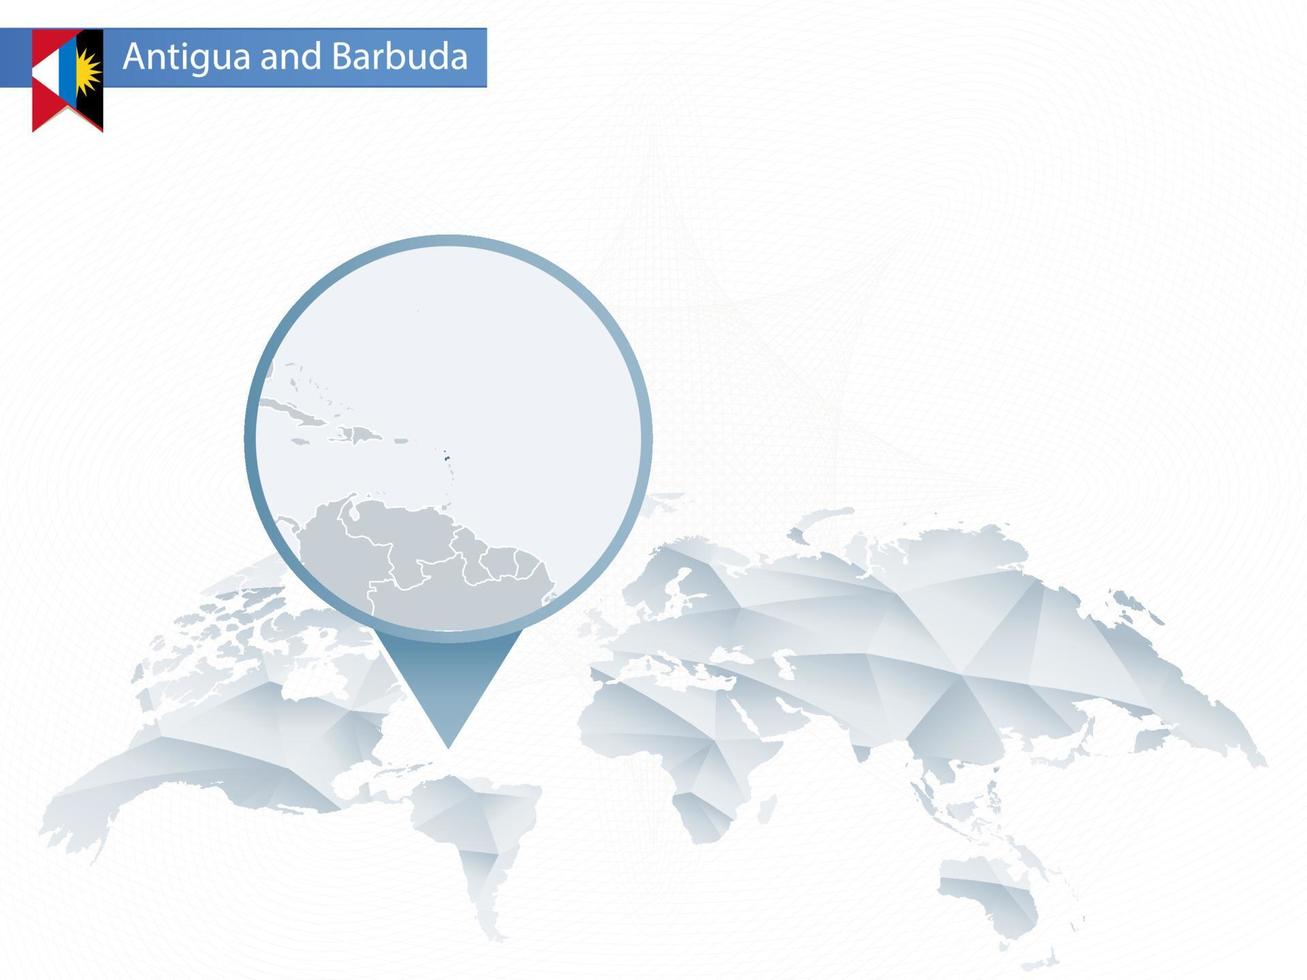 mapa-múndi abstrato arredondado com mapa detalhado fixado de antígua e barbuda. vetor